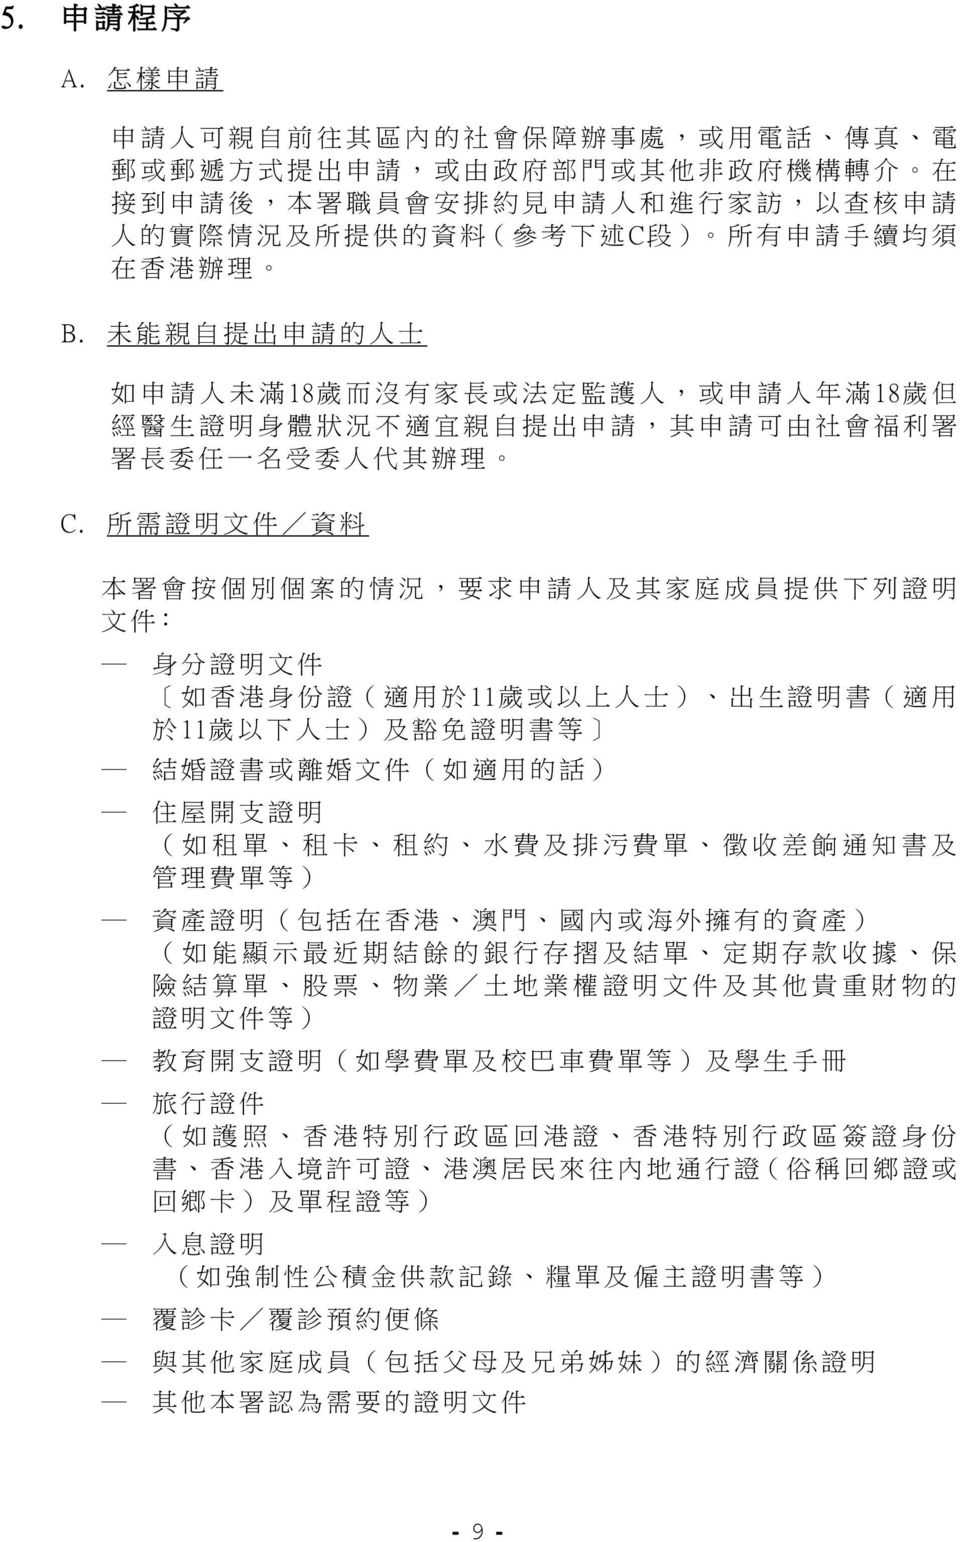 所 有 申 請 手 續 均 須 在 香 港 辦 理 B. 未 能 親 自 提 出 申 請 的 人 士 如 申 請 人 未 滿 18 歲 而 沒 有 家 長 或 法 定 監 護 人, 或 申 請 人 年 滿 18 歲 但 經 醫 生 證 明 身 體 狀 況 不 適 宜 親 自 提 出 申 請, 其 申 請 可 由 社 會 福 利 署 署 長 委 任 一 名 受 委 人 代 其 辦 理 C.